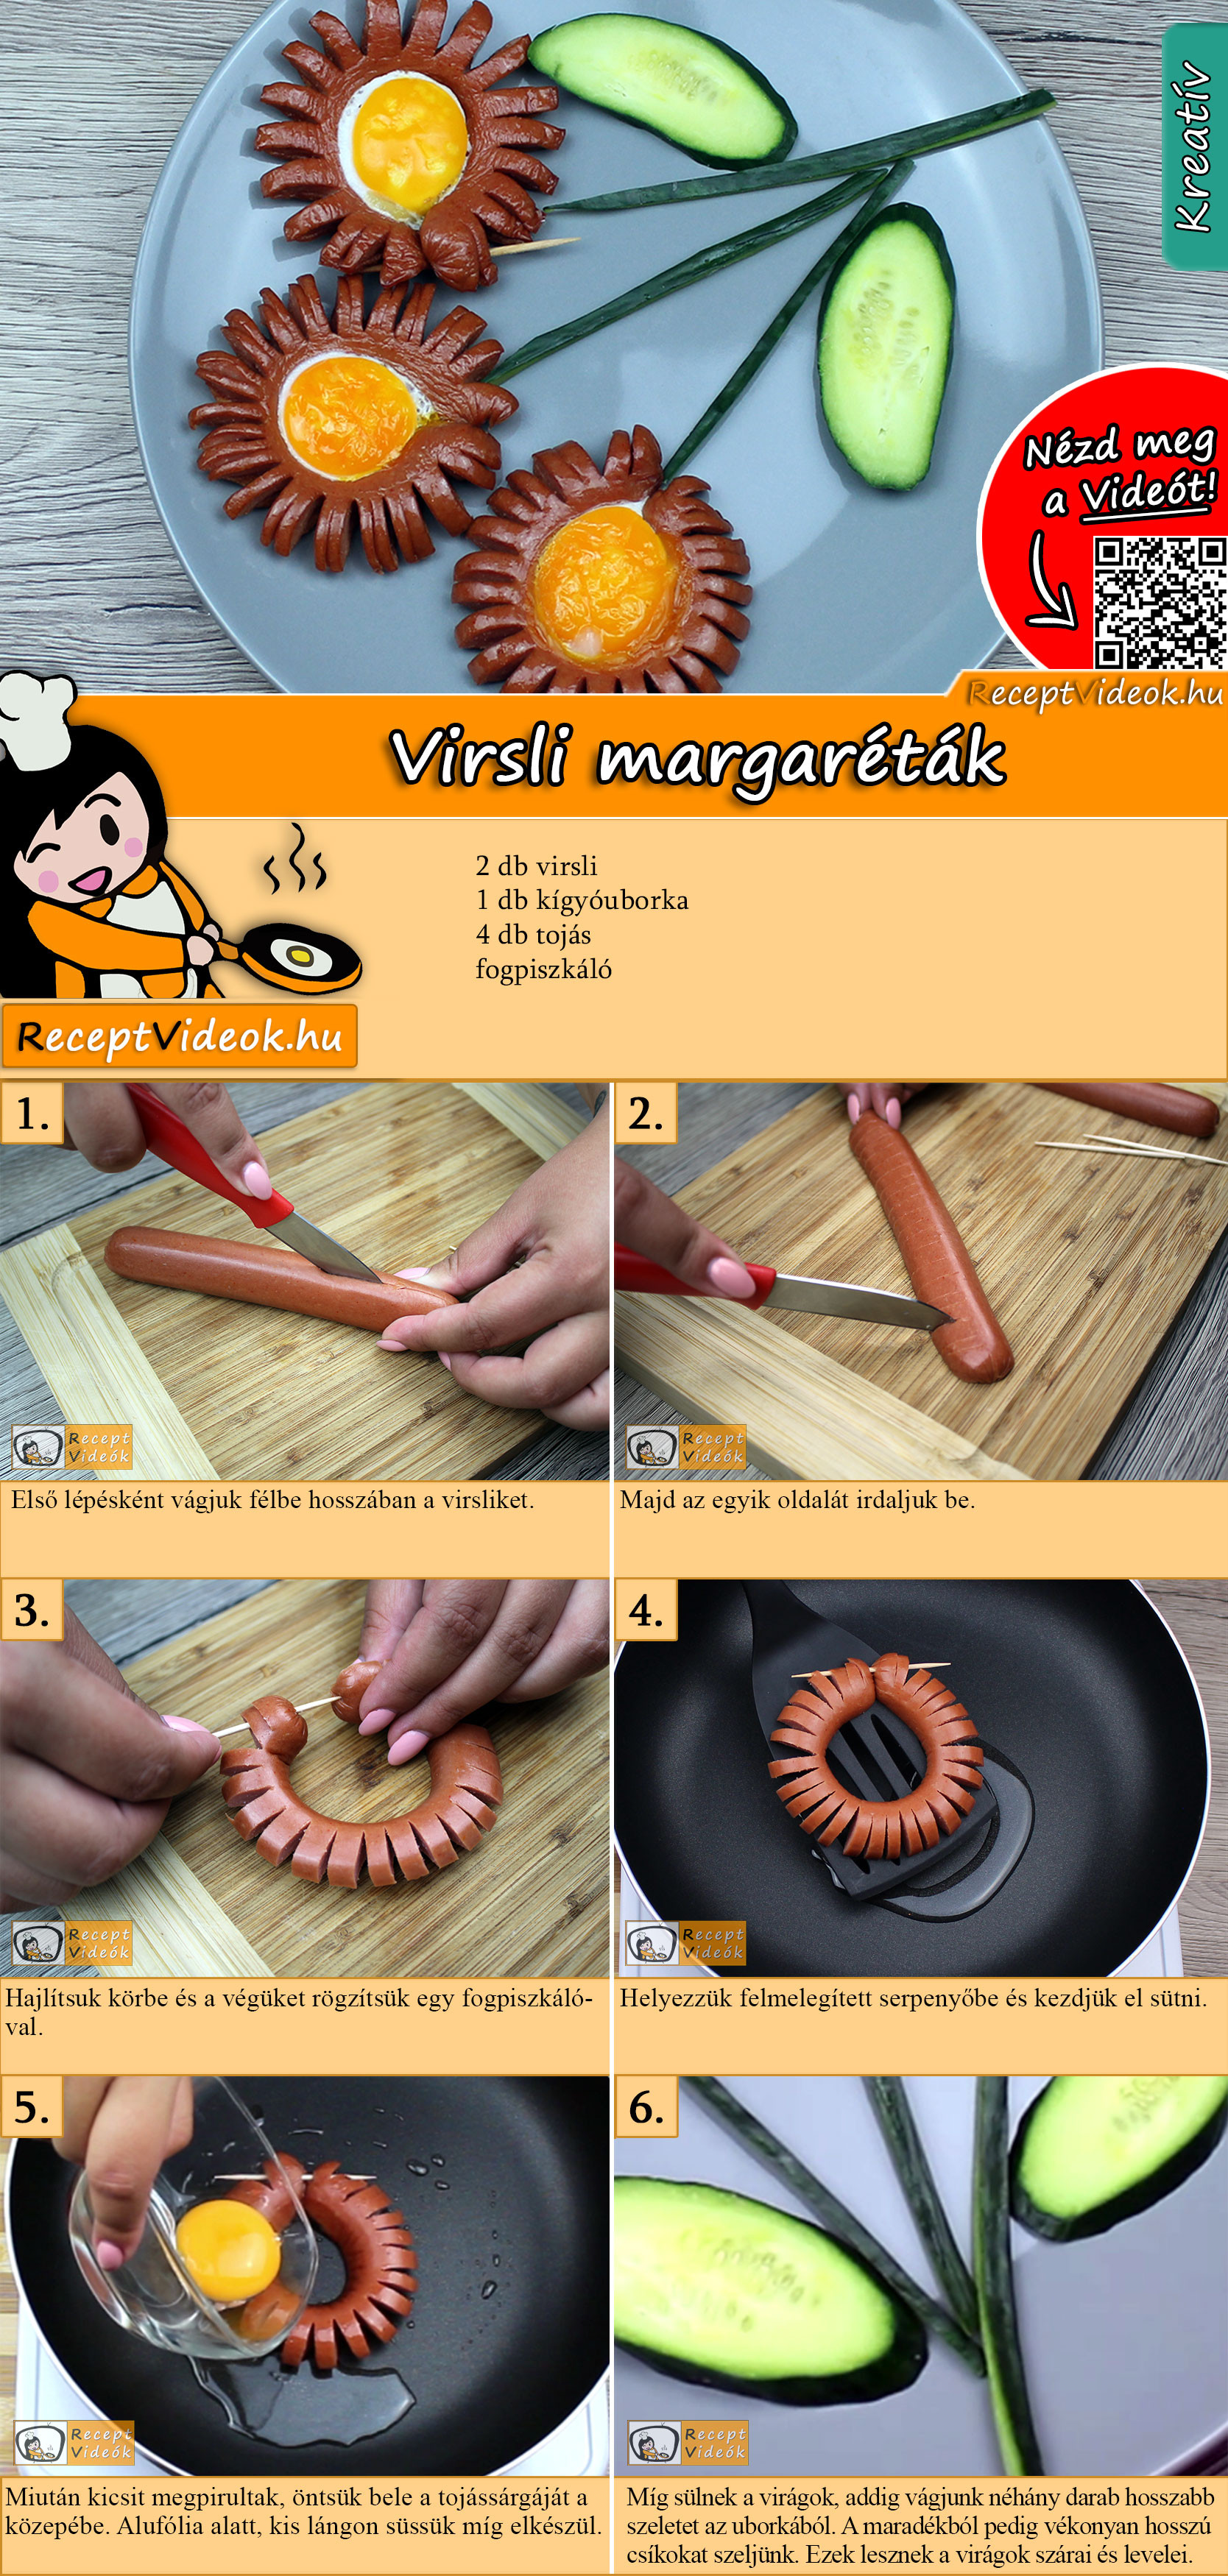 Virsli margaréták recept elkészítése videóval